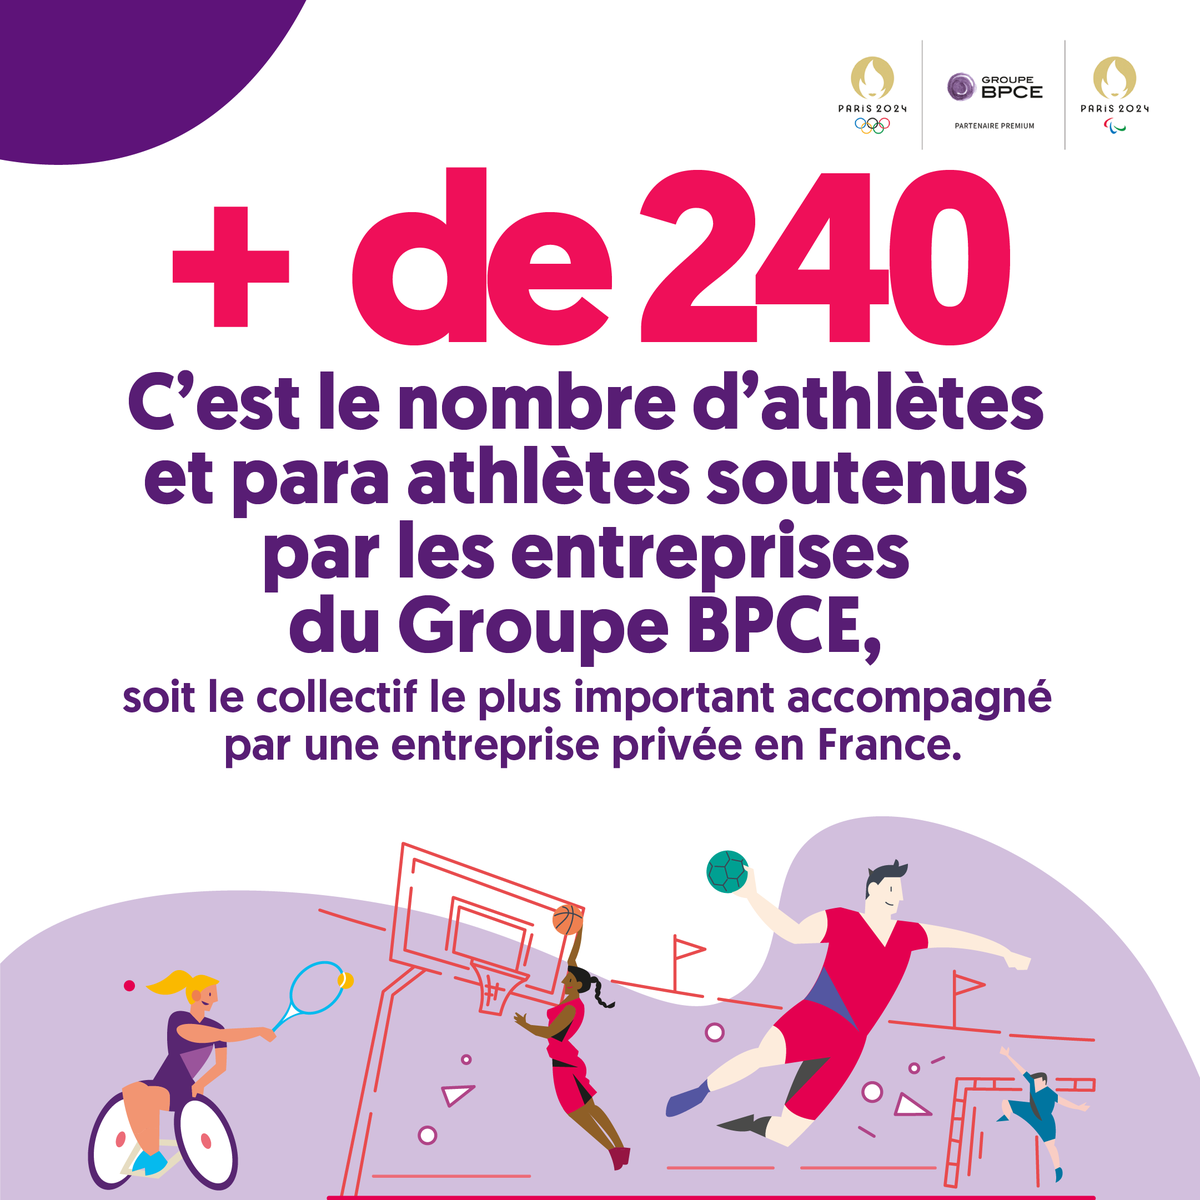 [#ToujoursPlusSport] Grâce à l’engagement des entreprises du @GroupeBPCE, ce sont plus de 240 athlètes et para athlètes qui bénéficient d’un dispositif de soutien 💪Soutenir et accompagner des athlètes français est une ambition forte du @GroupeBPCE #BanqueDuSport #VivonsParis2024